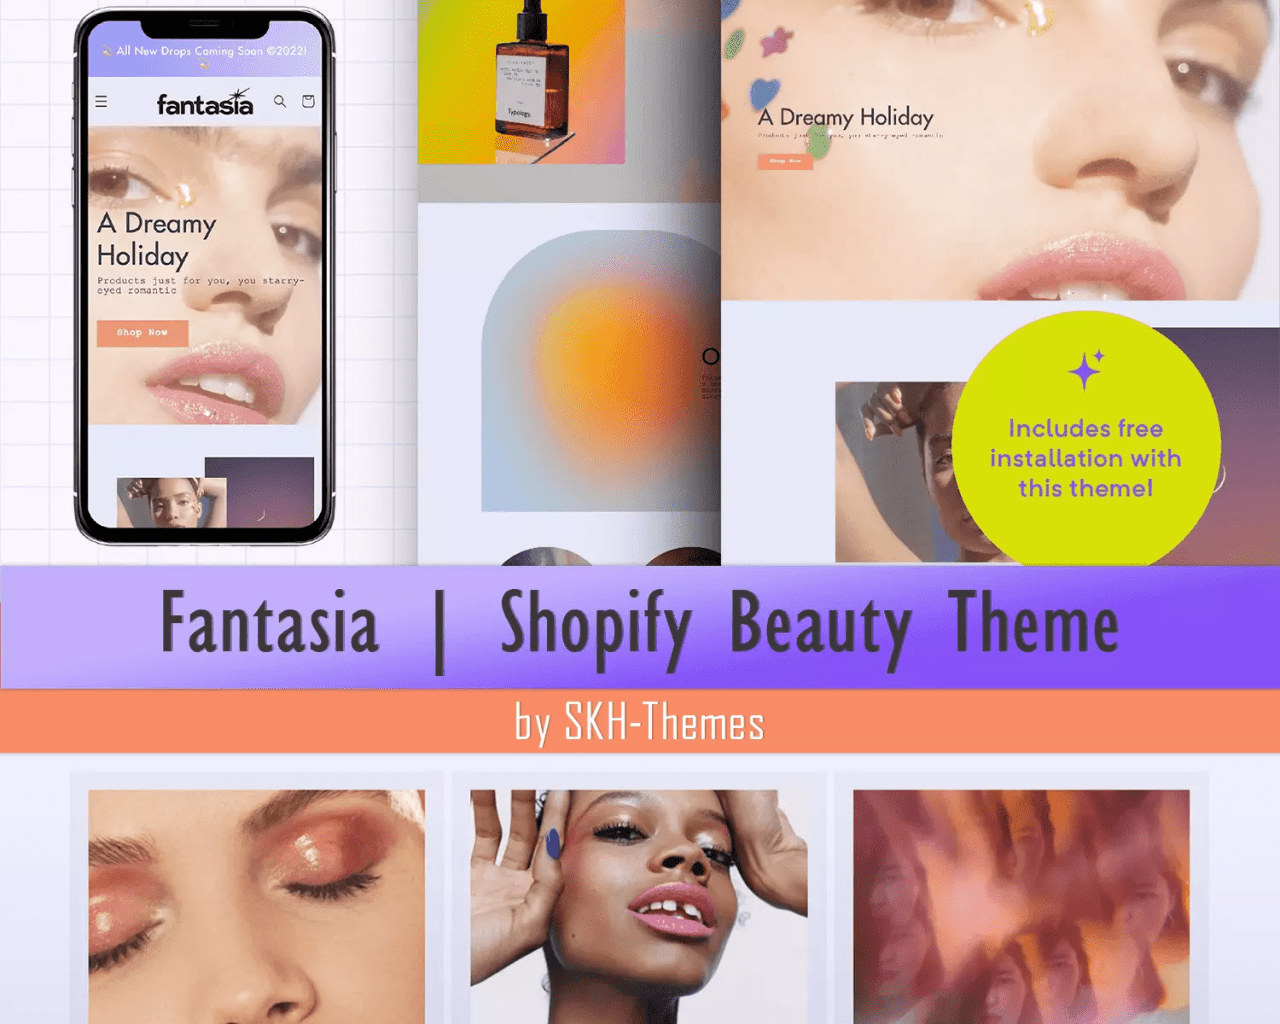 Fashion Shopify Theme